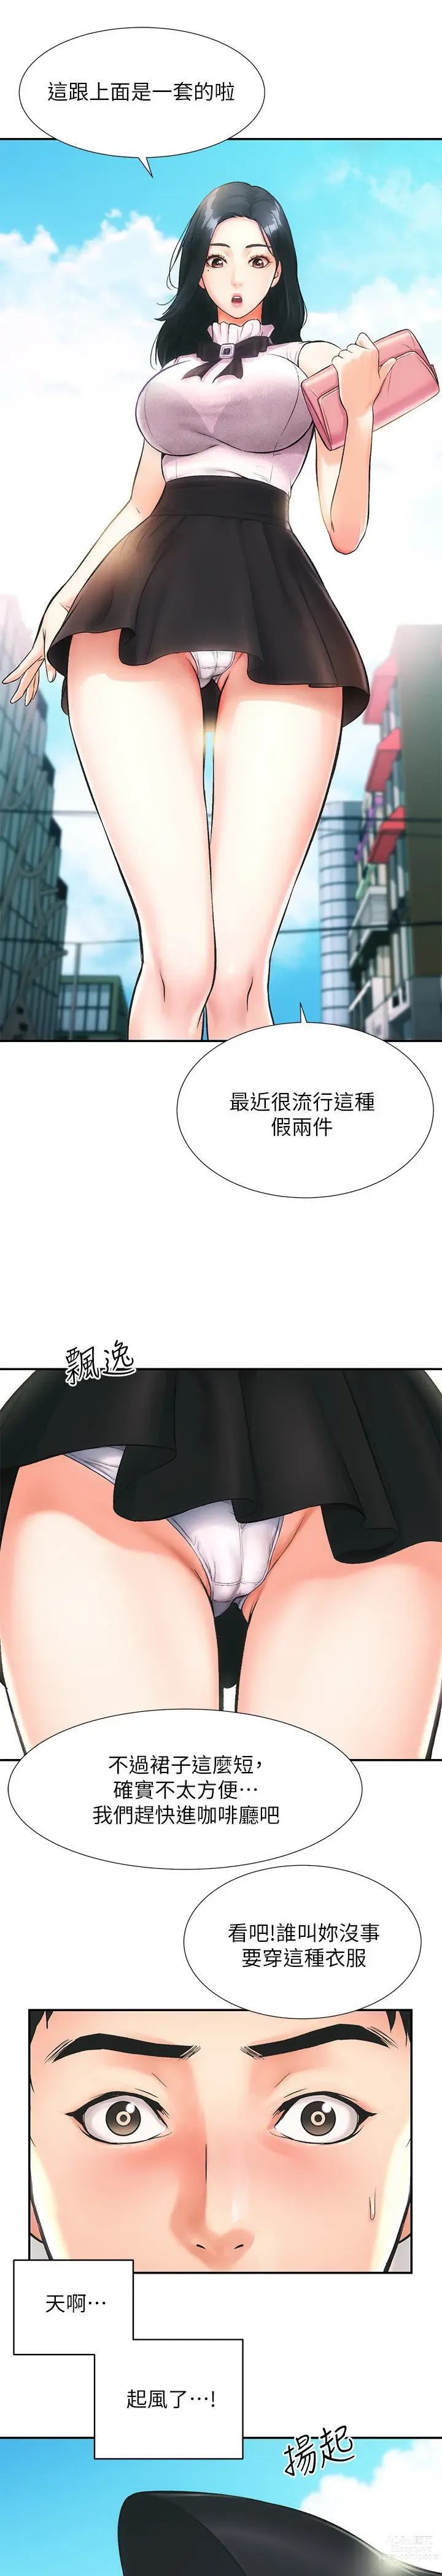 Page 23 of manga 弟妹诊撩室